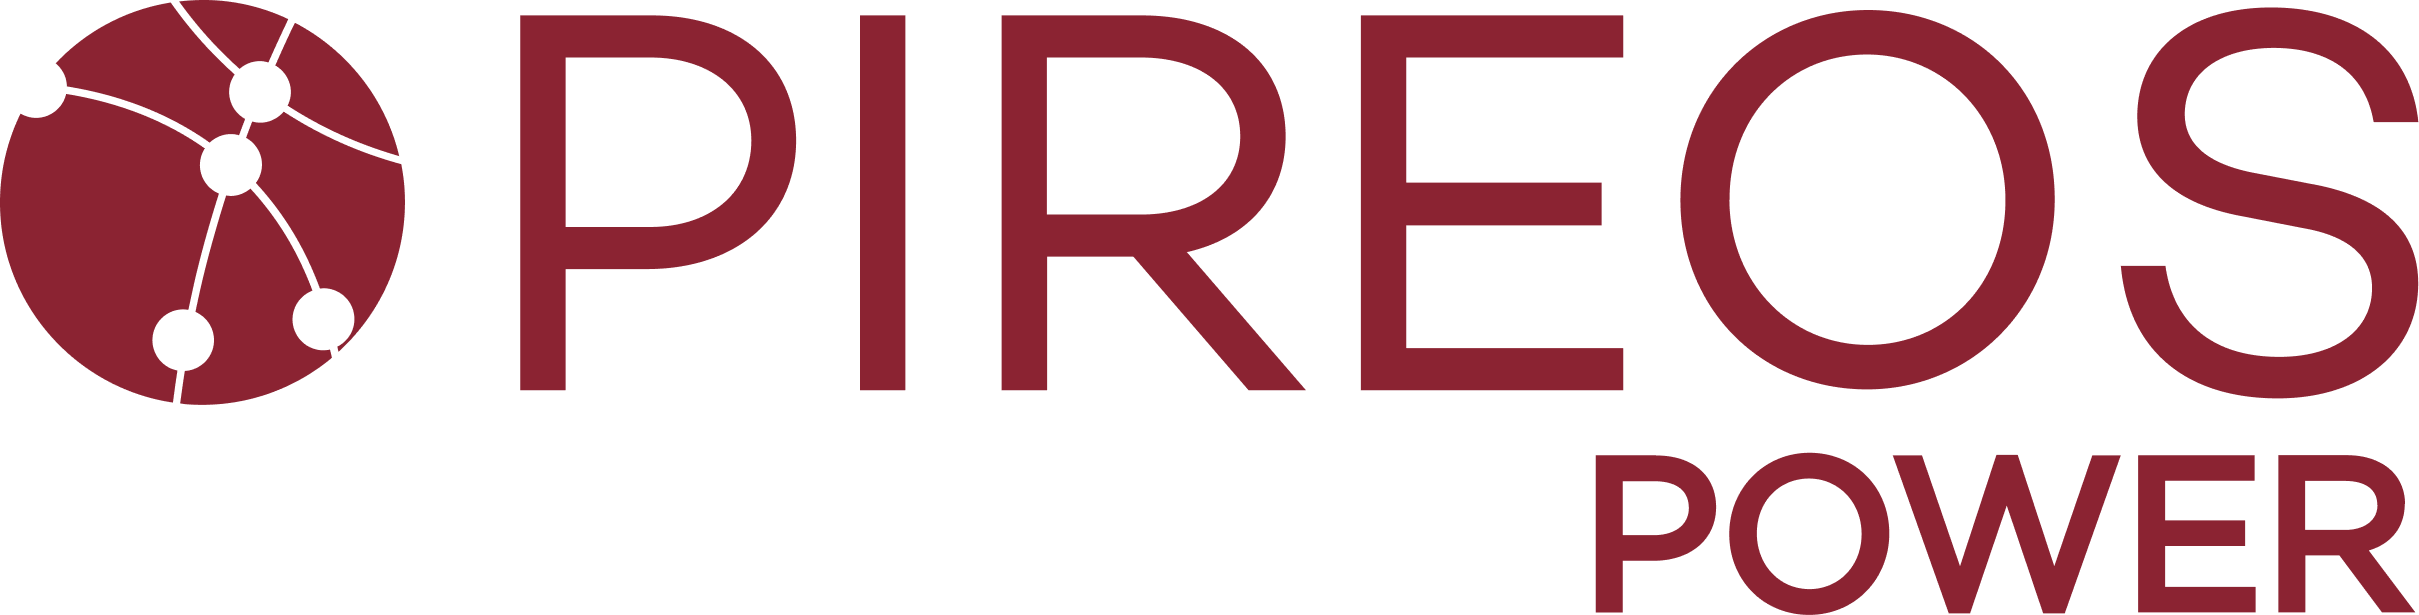 PIREOS POWER - Logotipo